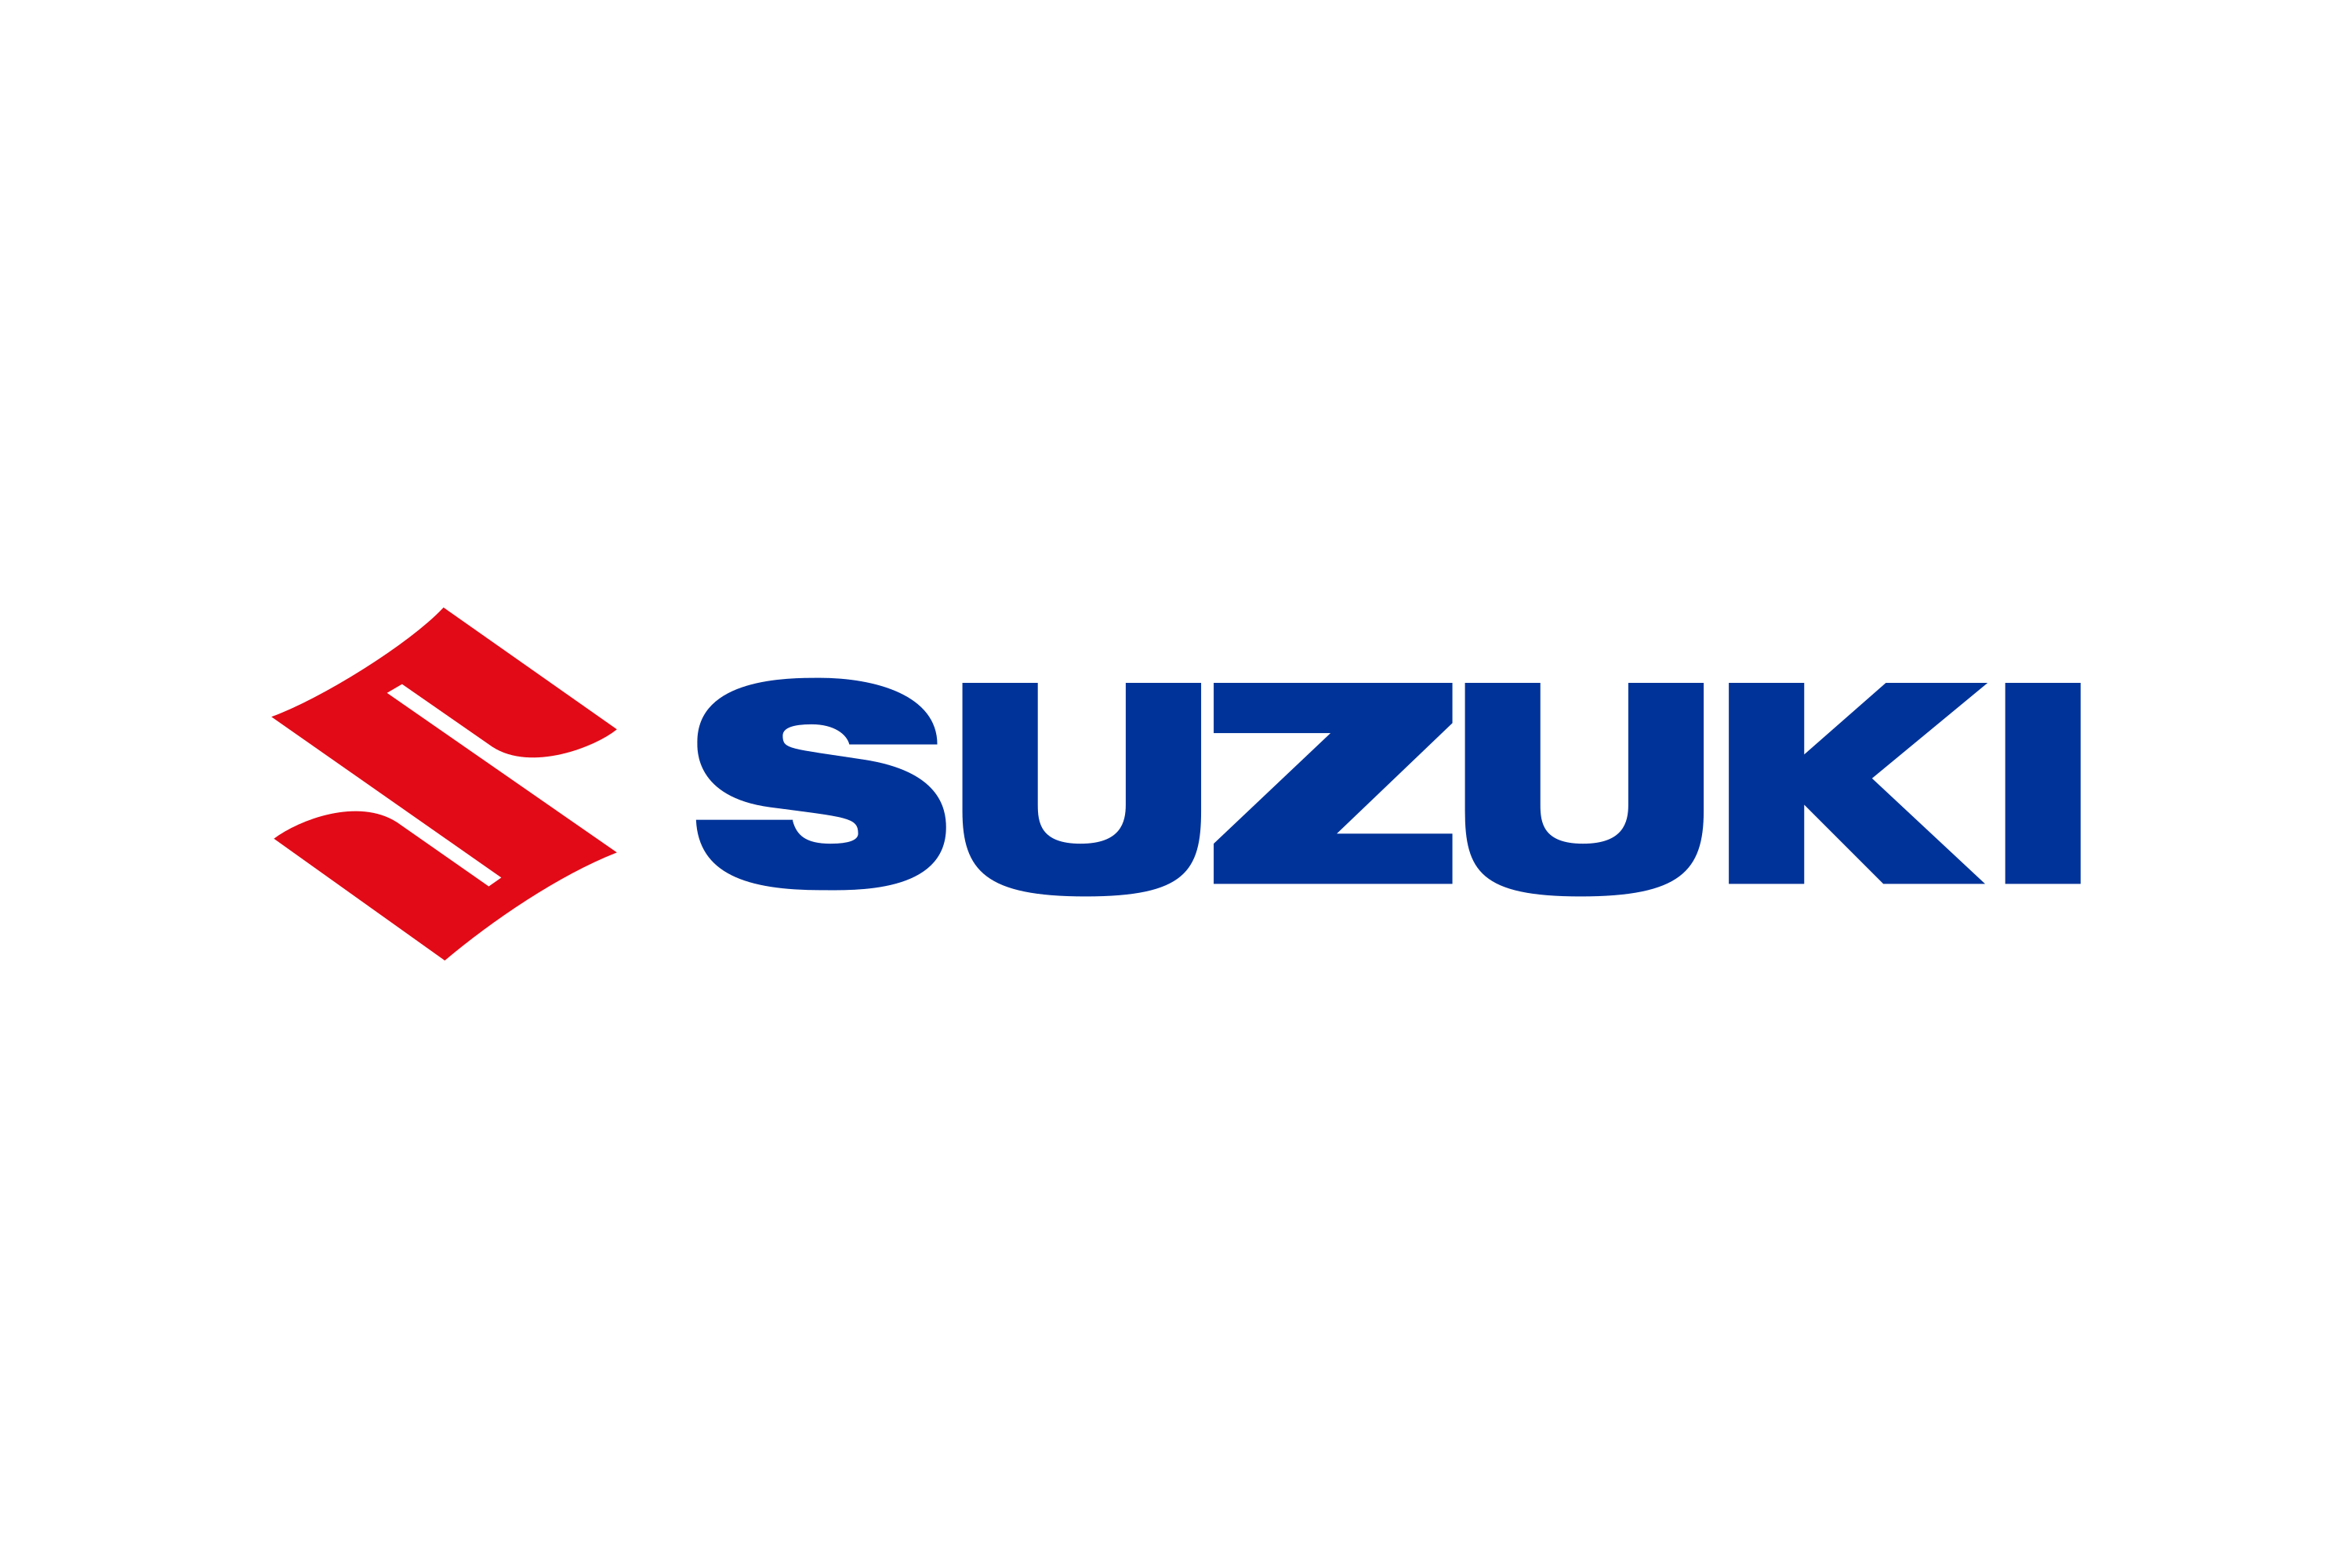 Maruti Suzuki logo PNG hd